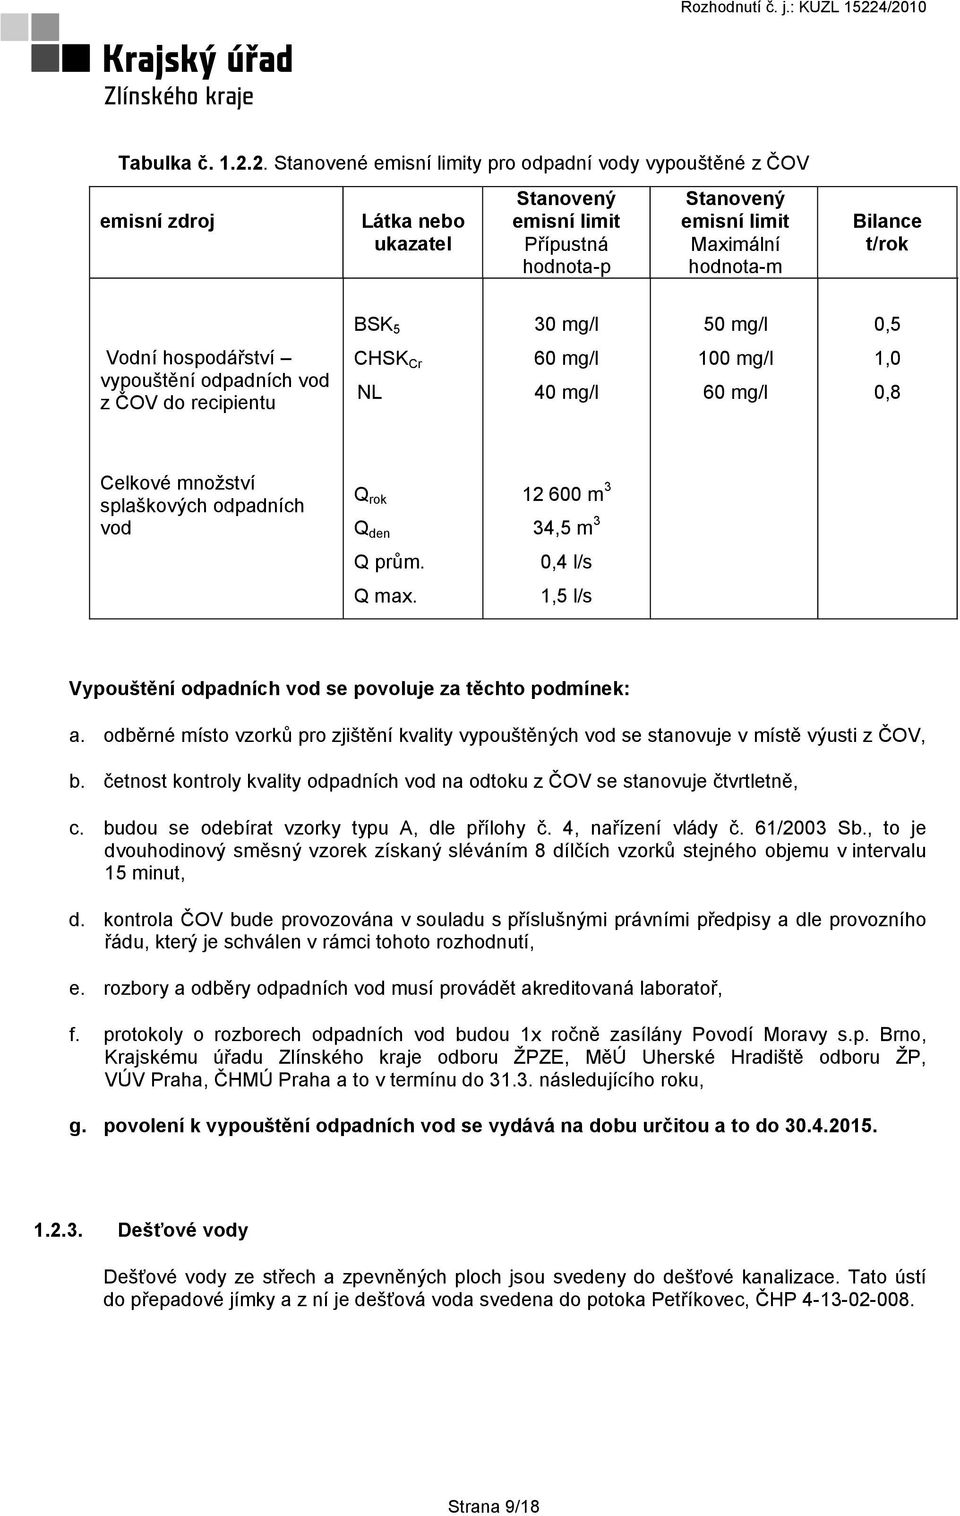 30 mg/l 50 mg/l 0,5 Vodní hospodářství vypouštění odpadních vod z ČOV do recipientu CHSK Cr NL 60 mg/l 40 mg/l 100 mg/l 60 mg/l 1,0 0,8 Celkové množství splaškových odpadních vod Q rok Q den 12 600 m